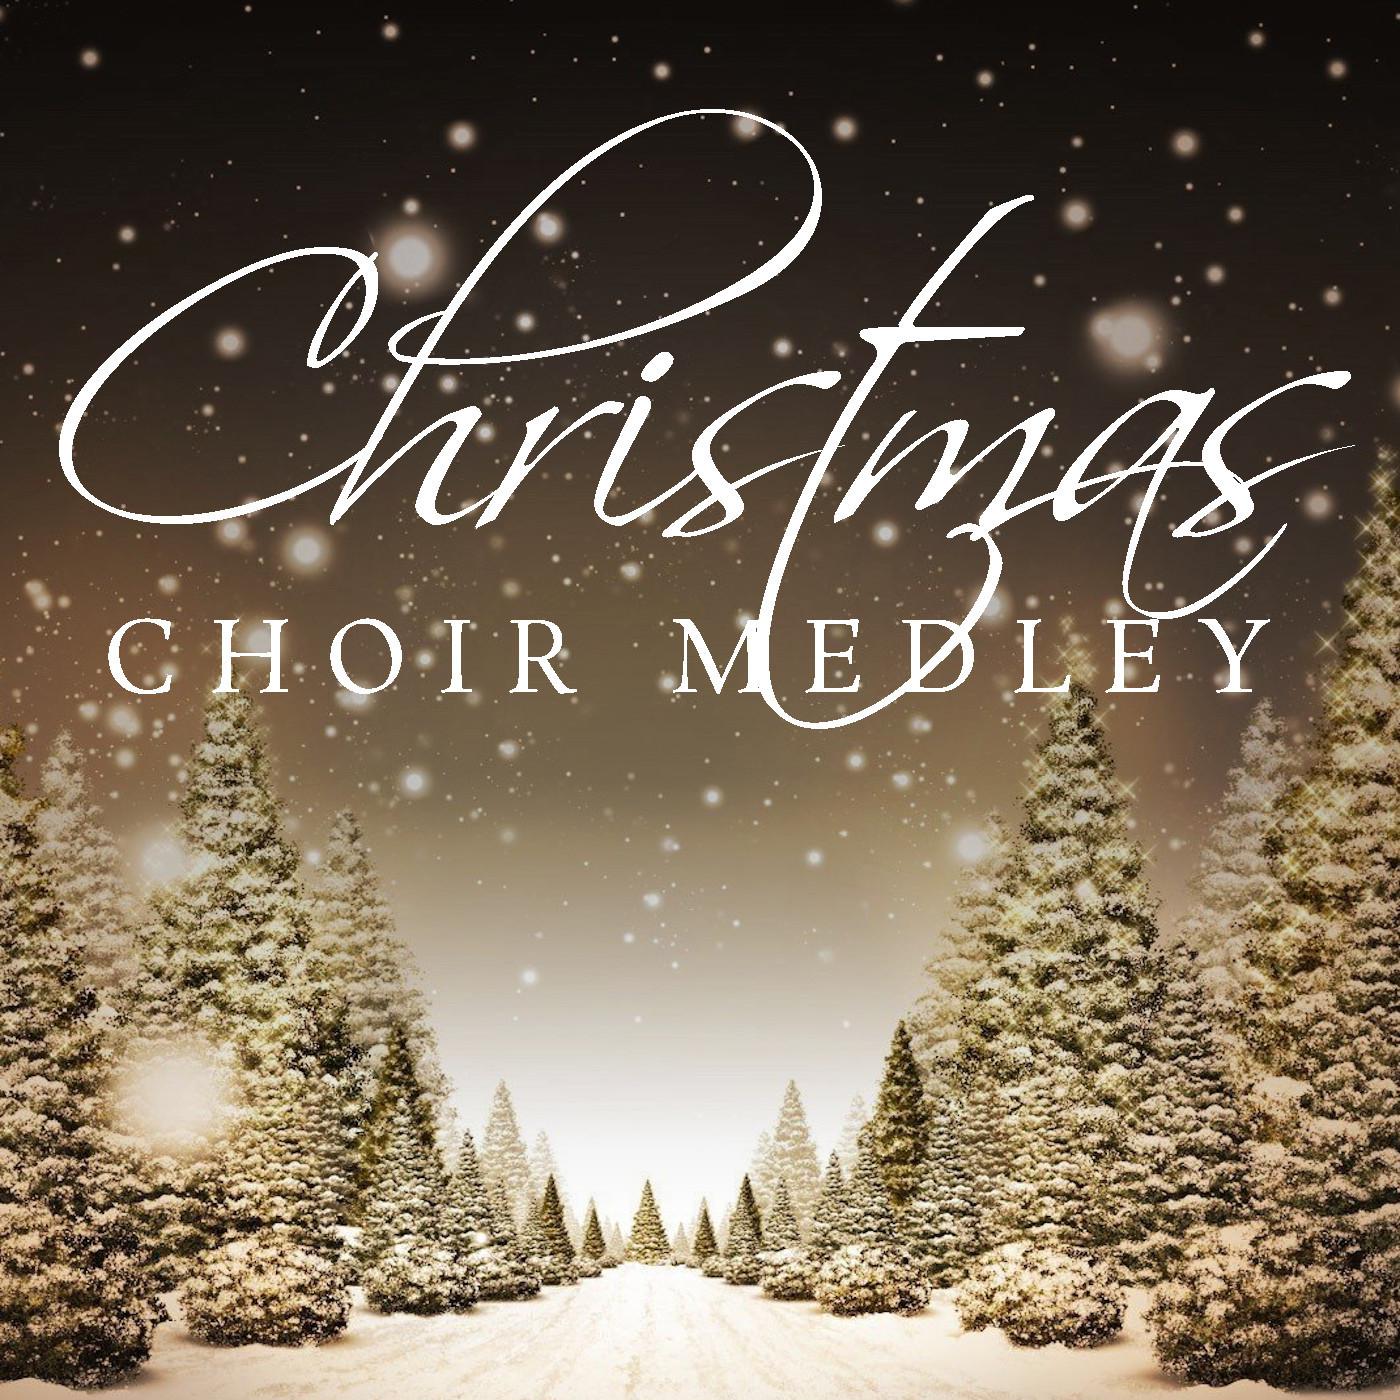 Christmas Festival Choir - Once in Royal David's City